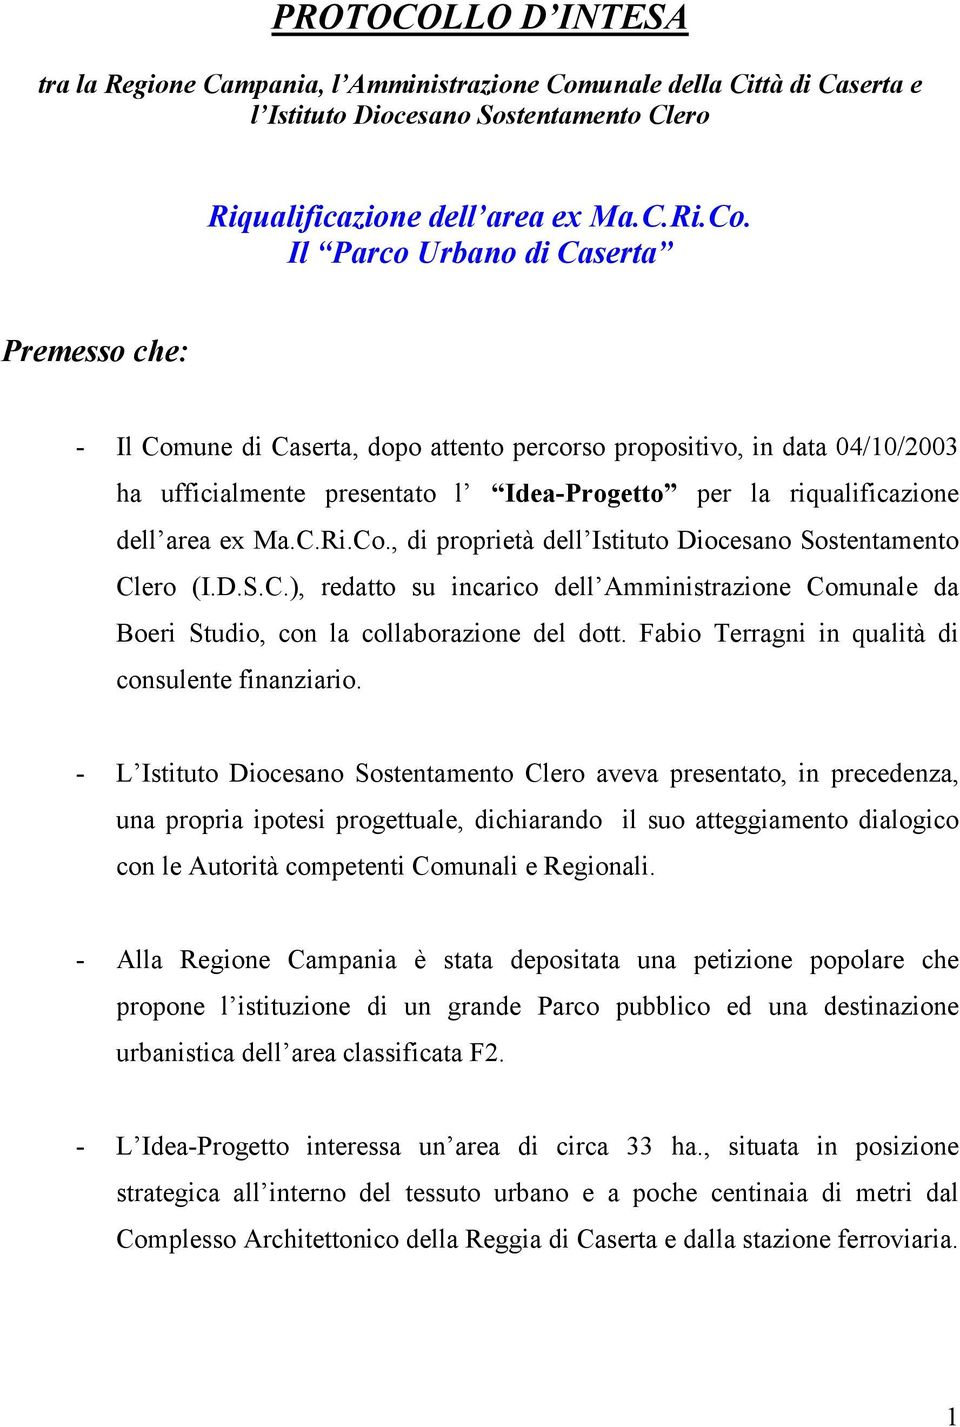 Il Parco Urbano di Caserta Premesso che: - Il Comune di Caserta, dopo attento percorso propositivo, in data 04/10/2003 ha ufficialmente presentato l Idea-Progetto per la riqualificazione dell area ex